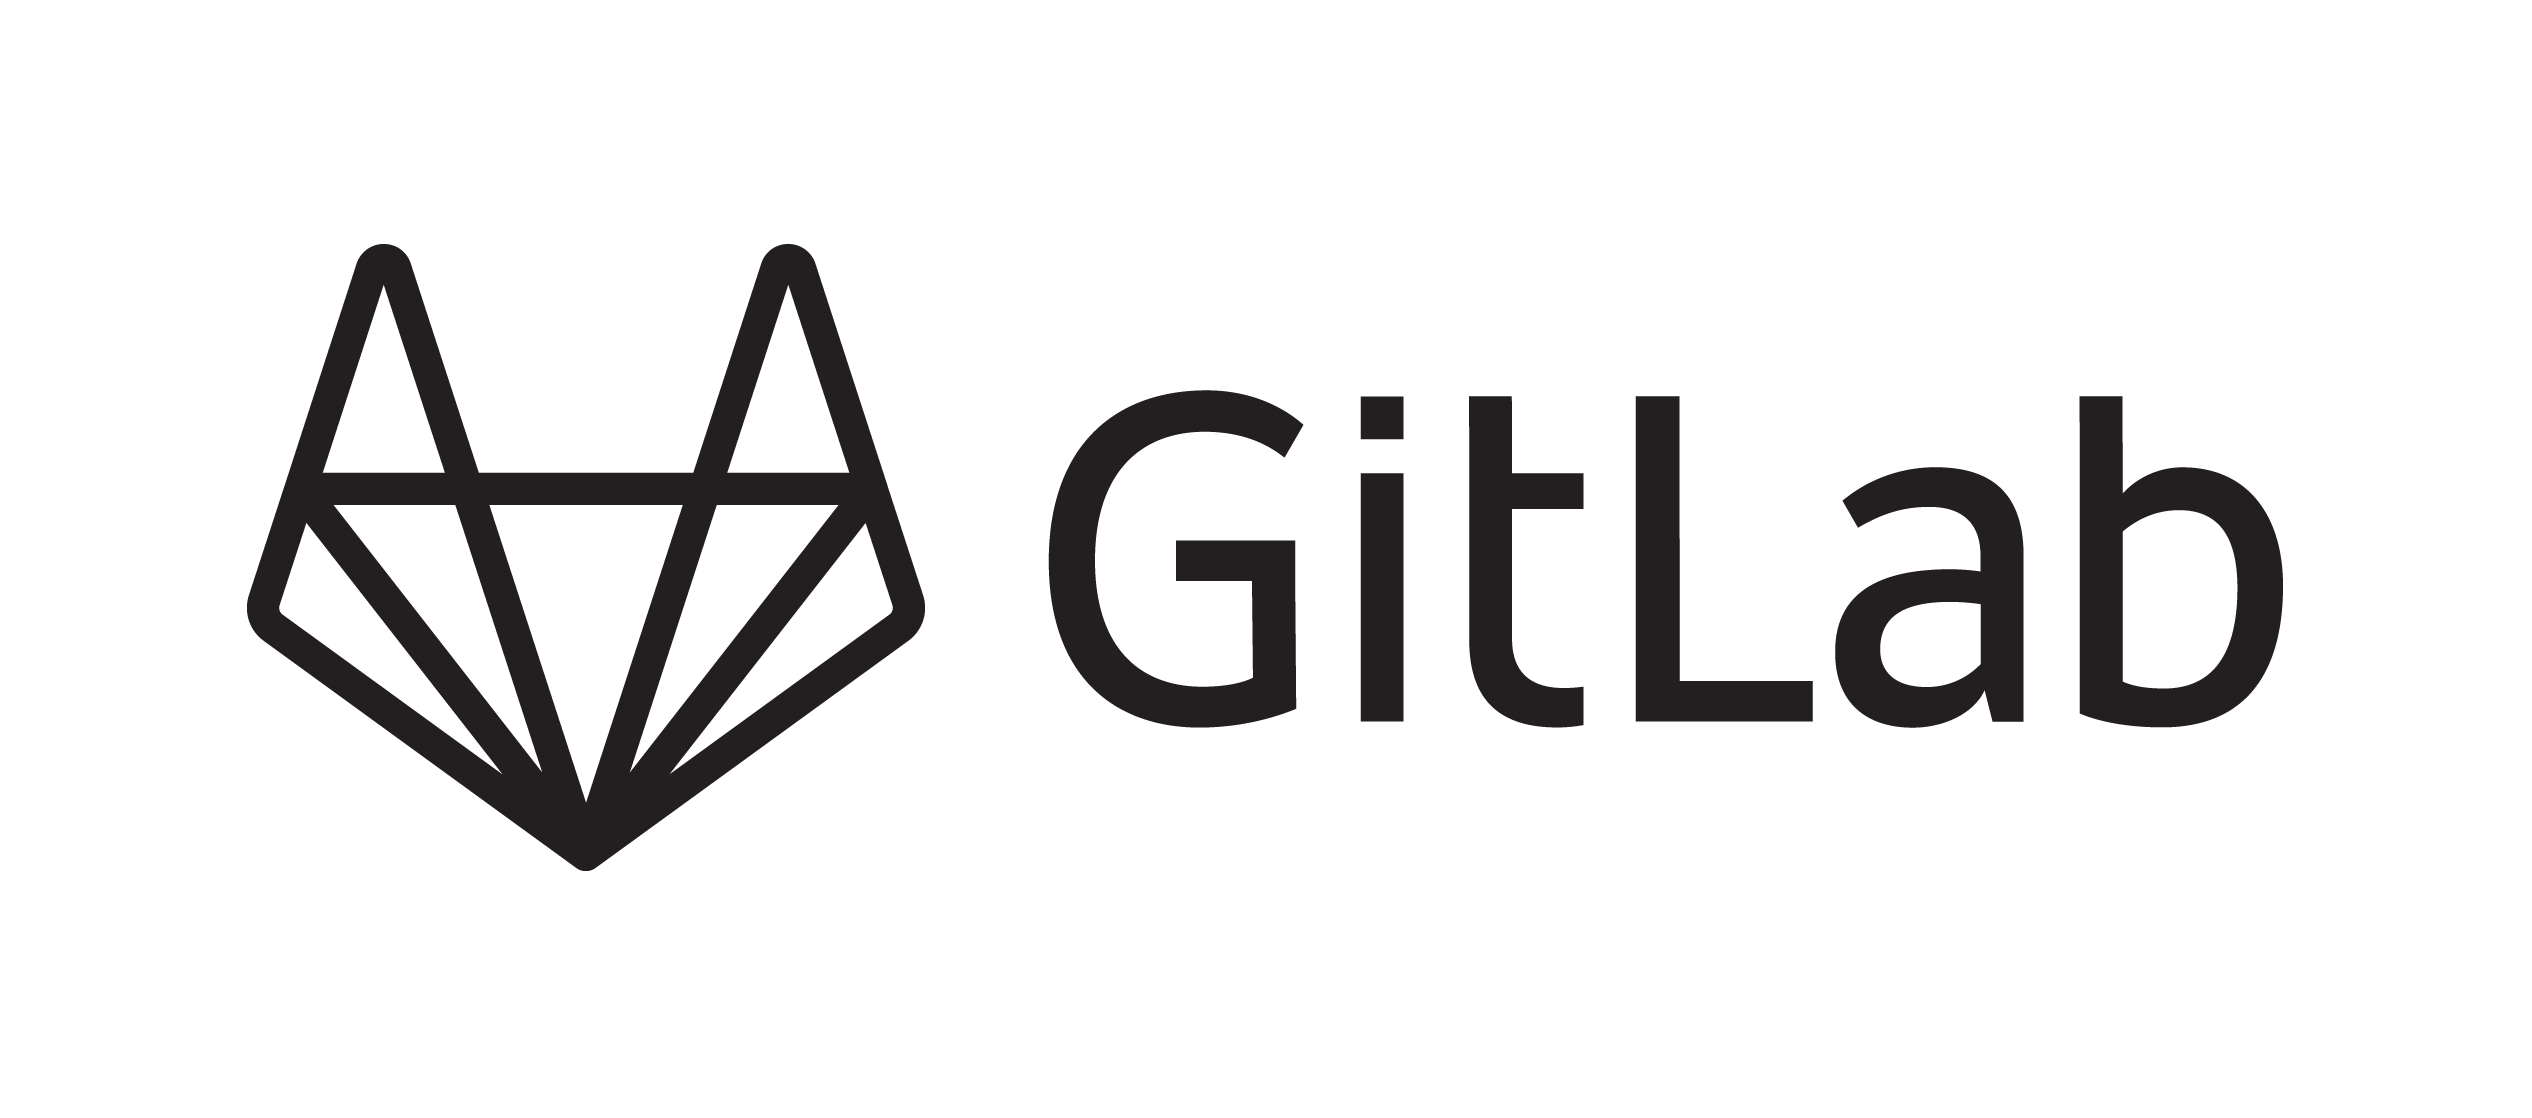 Gitlab Transparent Background